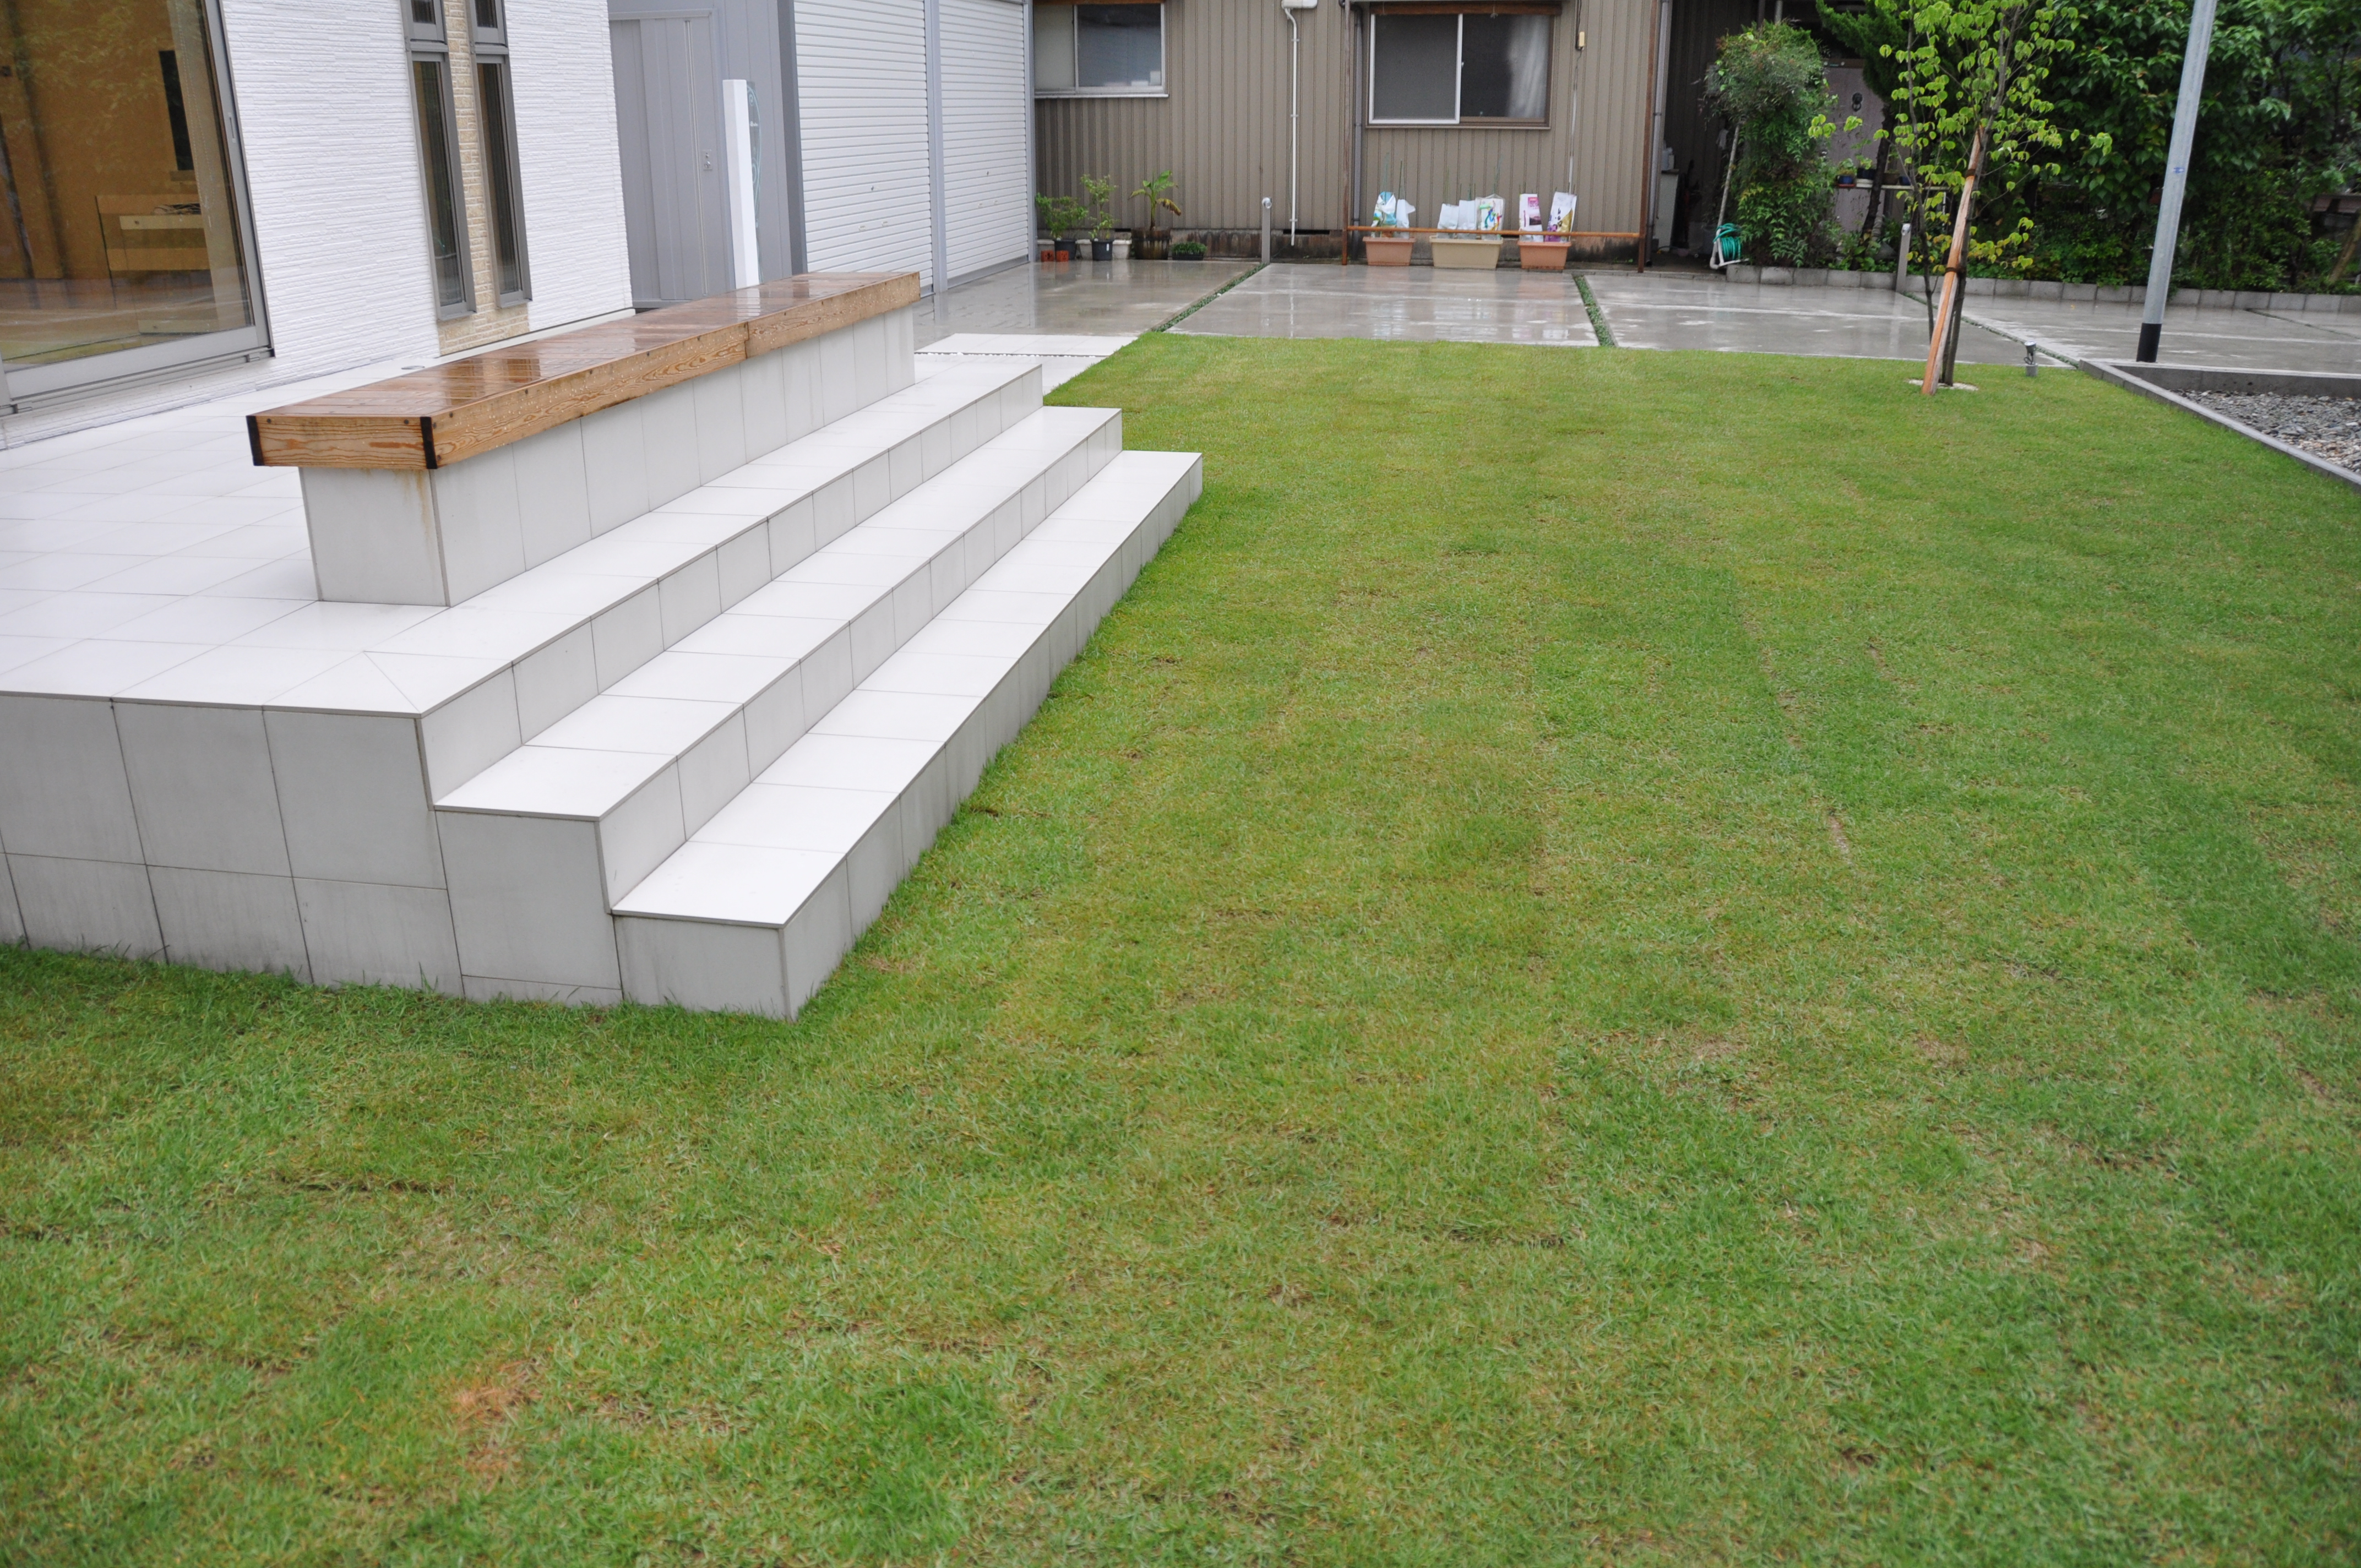 天然芝を超えた 人工芝 福井県 ガーデンスタジオシャレス庭屋 福井の外構工事 エクステリアのことなら庭屋シャレスへ